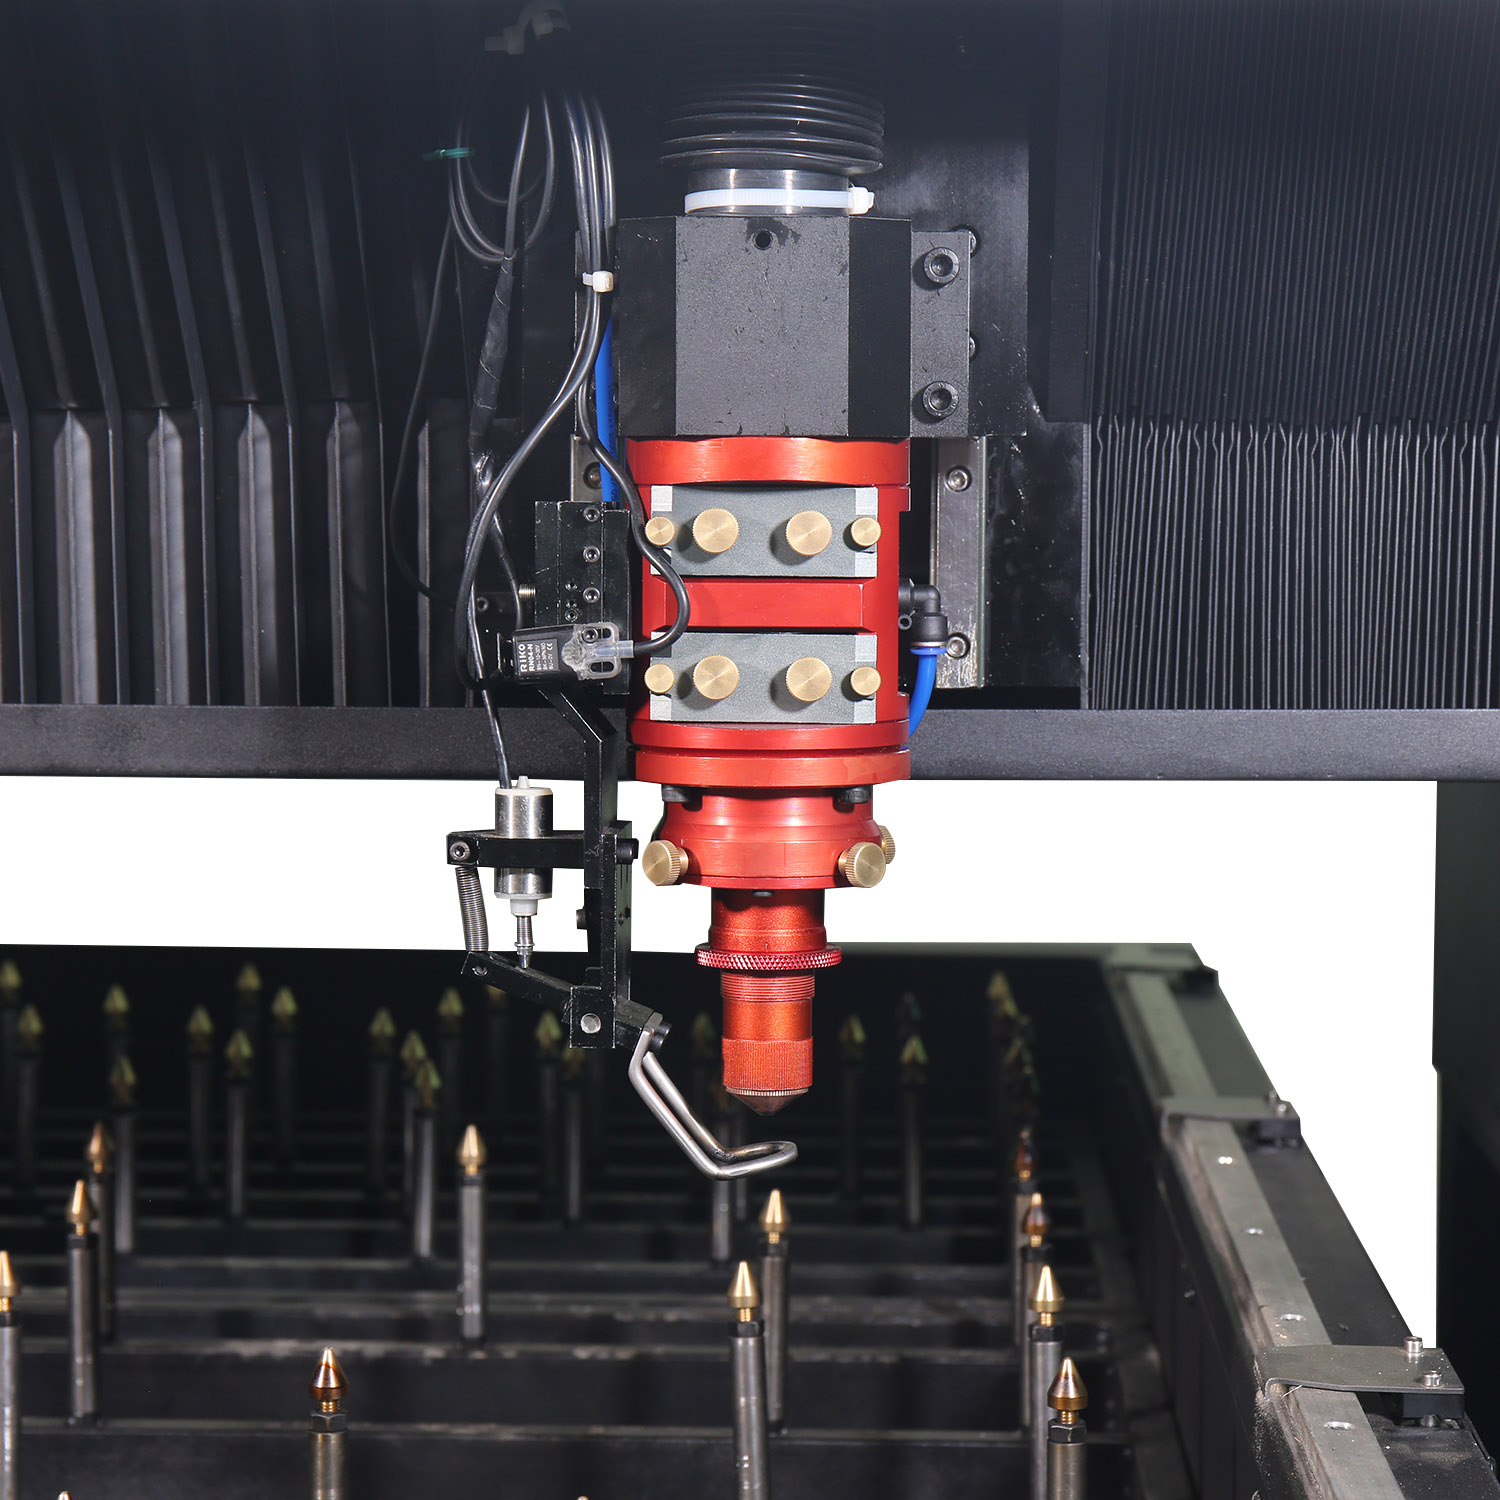 Machine de découpe laser 1000W pour la fabrication de panneaux